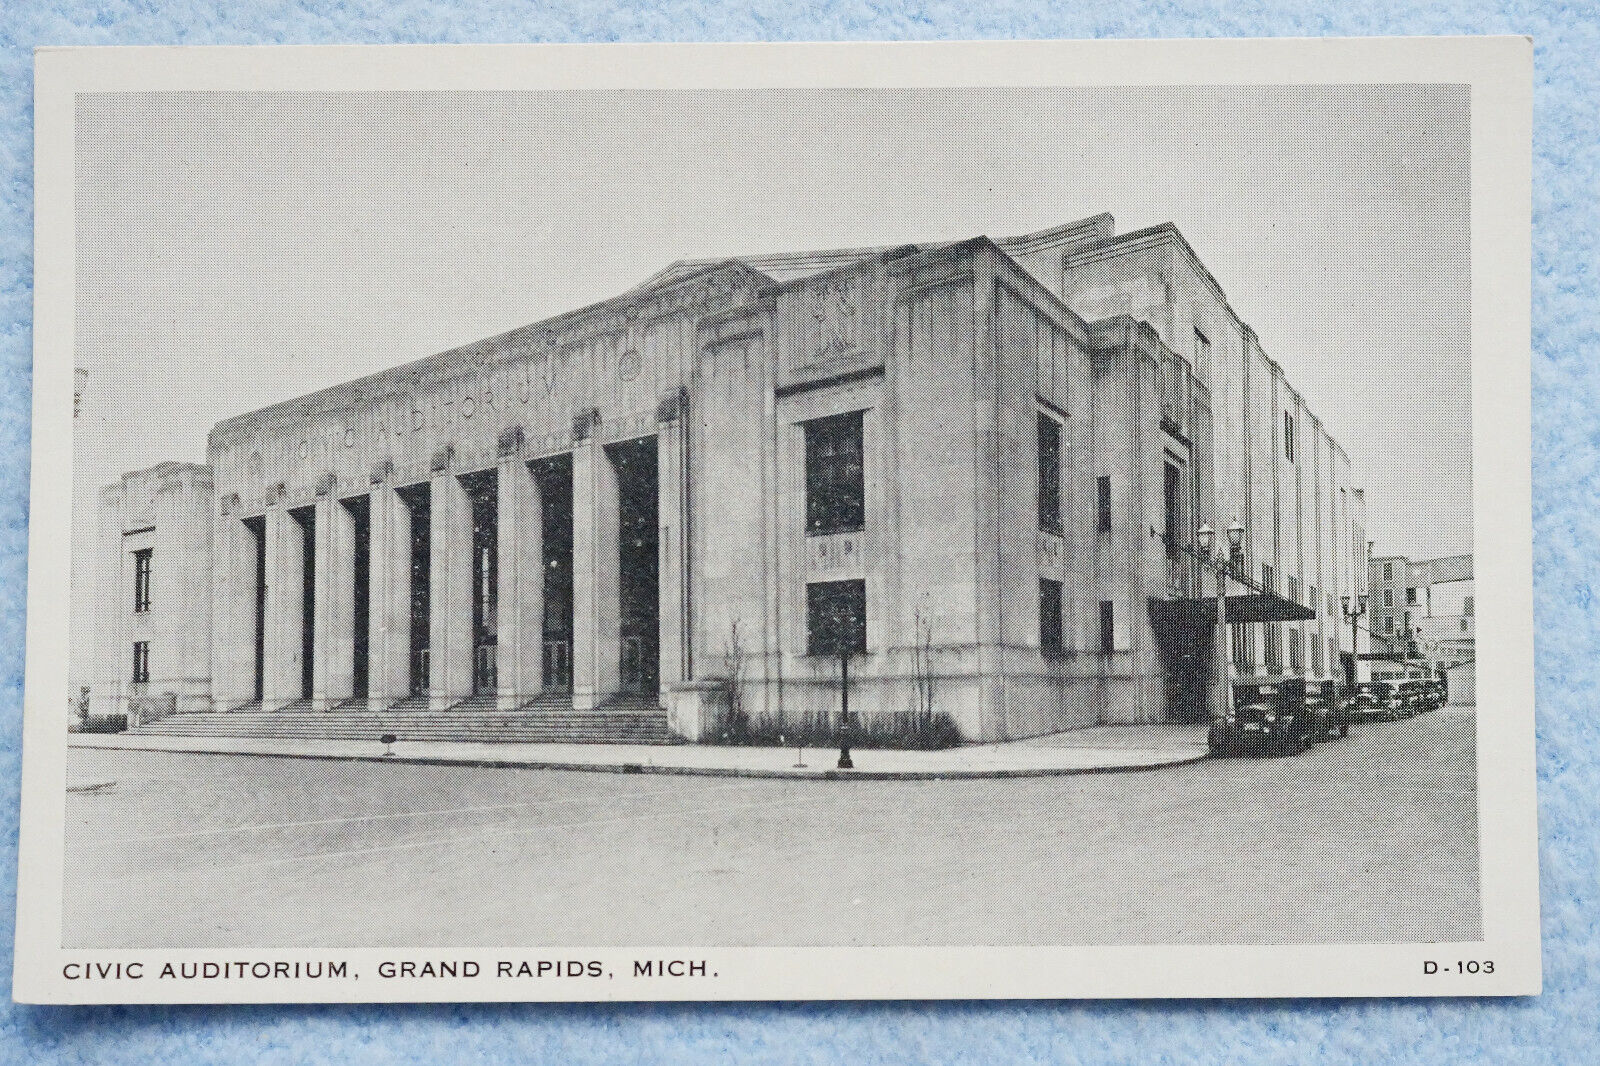 Civic Auditorium - Grand Rapids, Michigan